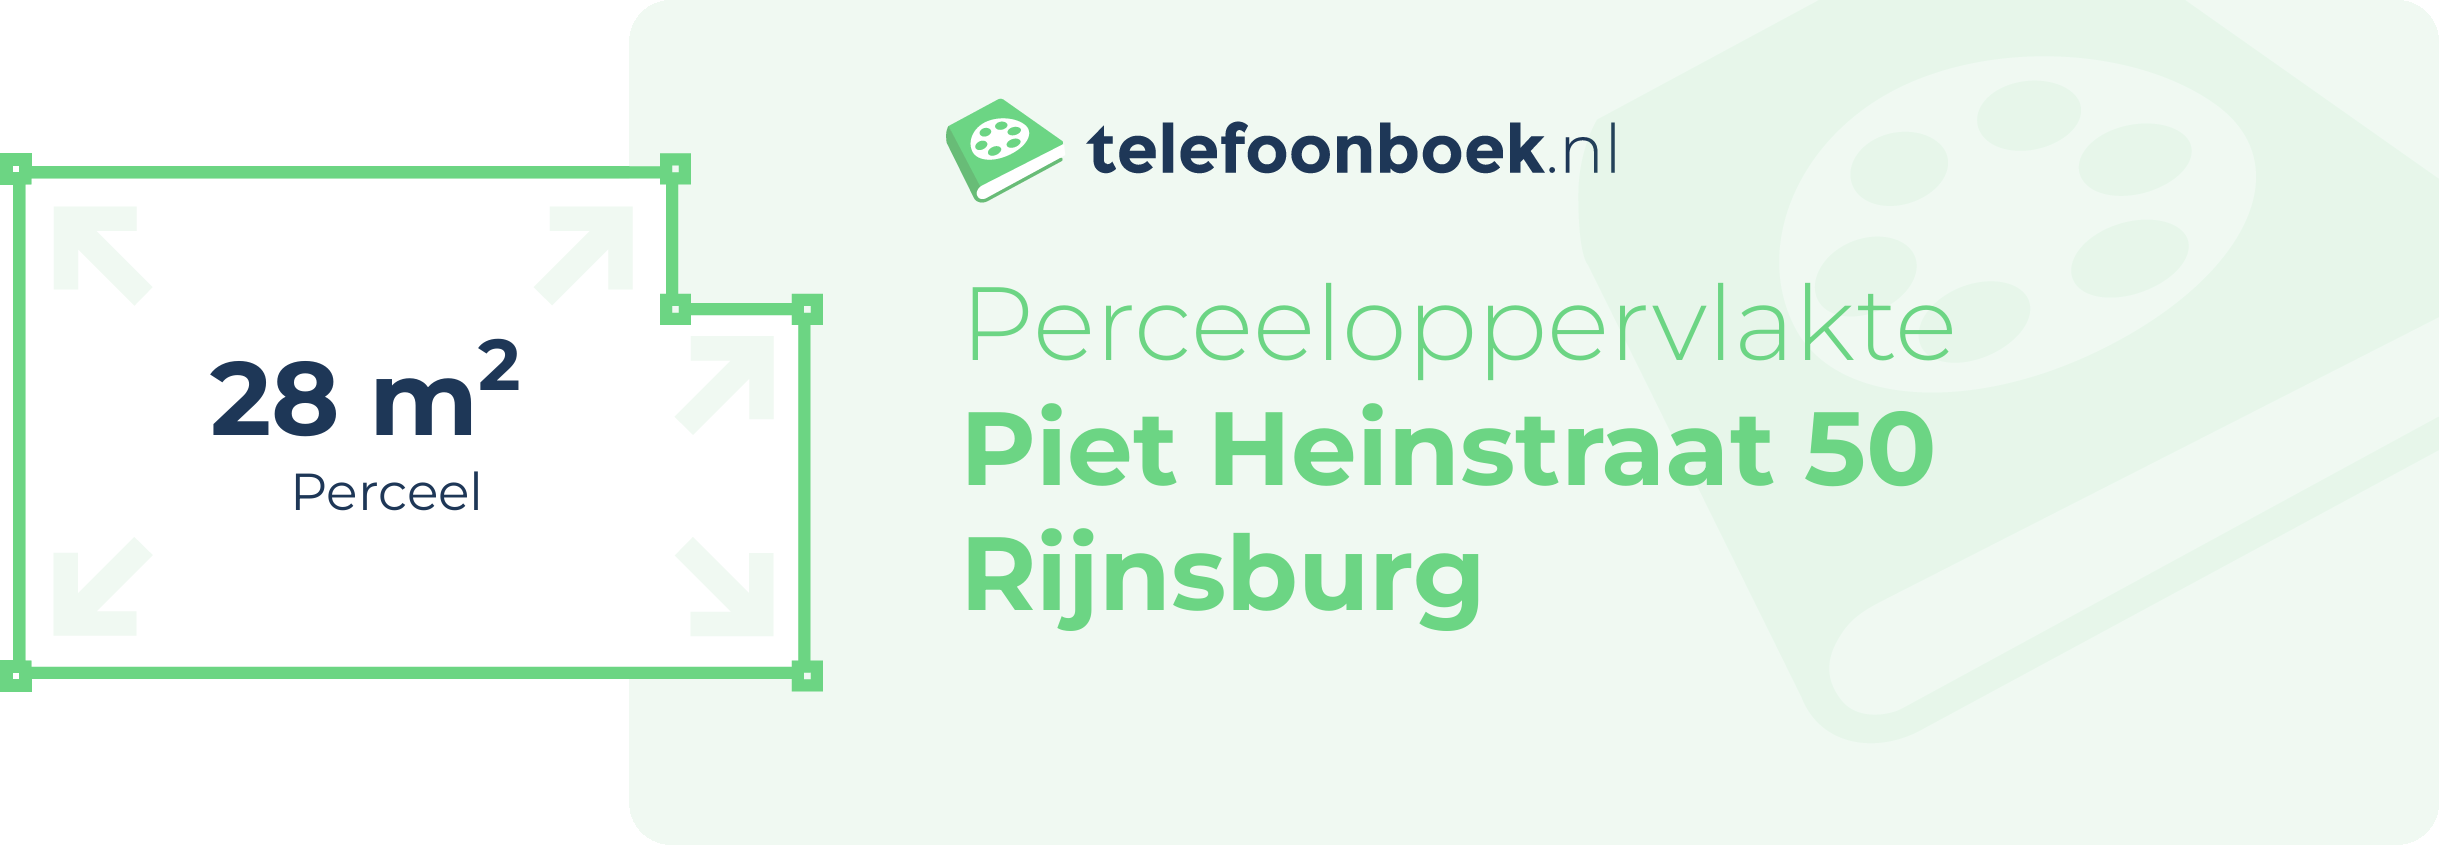 Perceeloppervlakte Piet Heinstraat 50 Rijnsburg